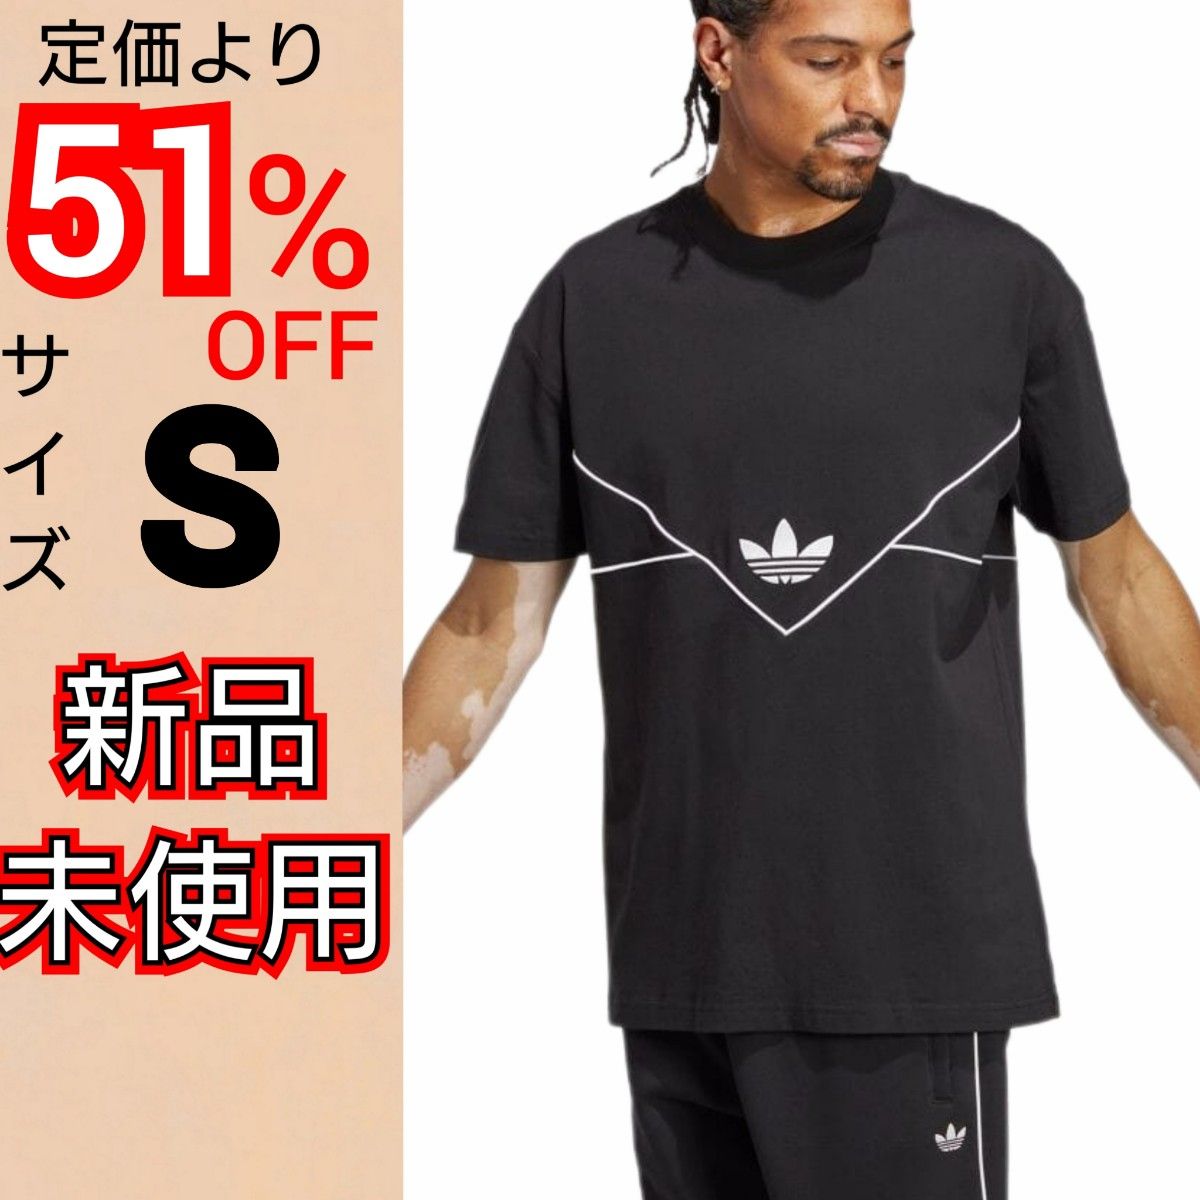 【S】アディダスオリジナルス シーズナル アクティブ Tシャツ 新品未使用 タグ付き 綿100% レギュラーフィット